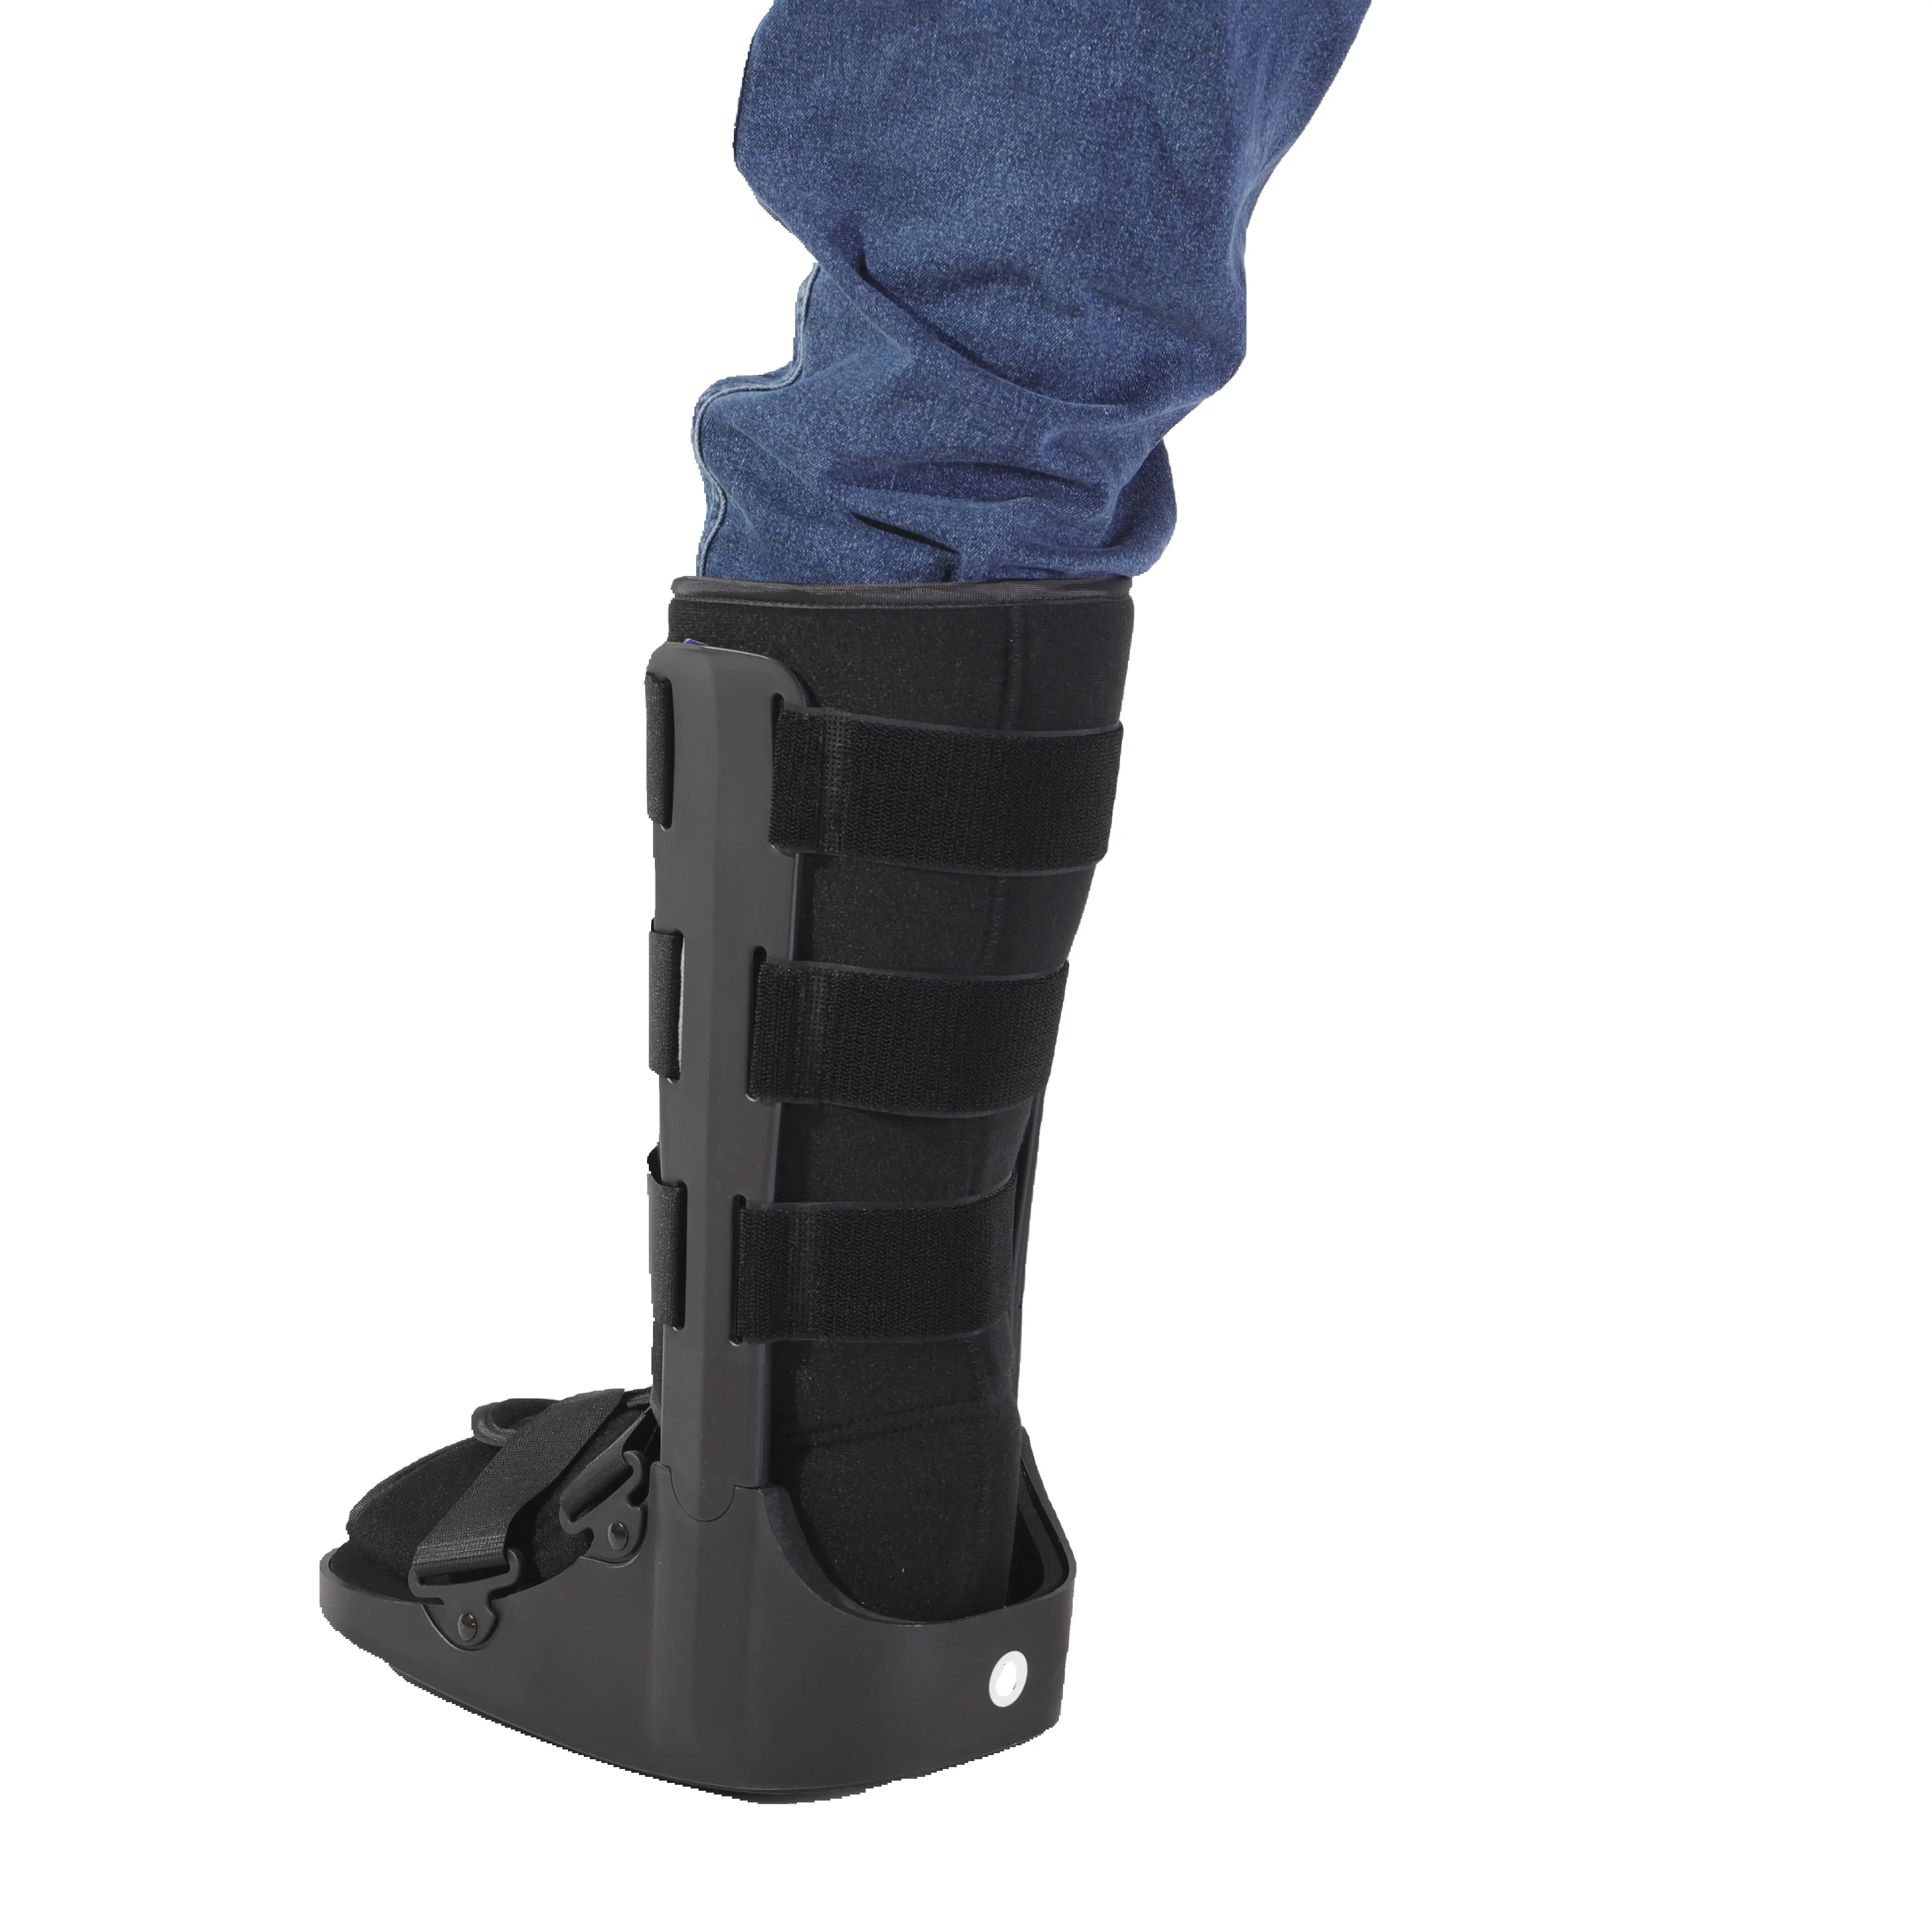 Bán buôn Nhà máy cung cấp chỉnh hình vật lý trị liệu thiết bị cam mắt cá chân Walker Boot chỉnh hình gãy xương khởi động